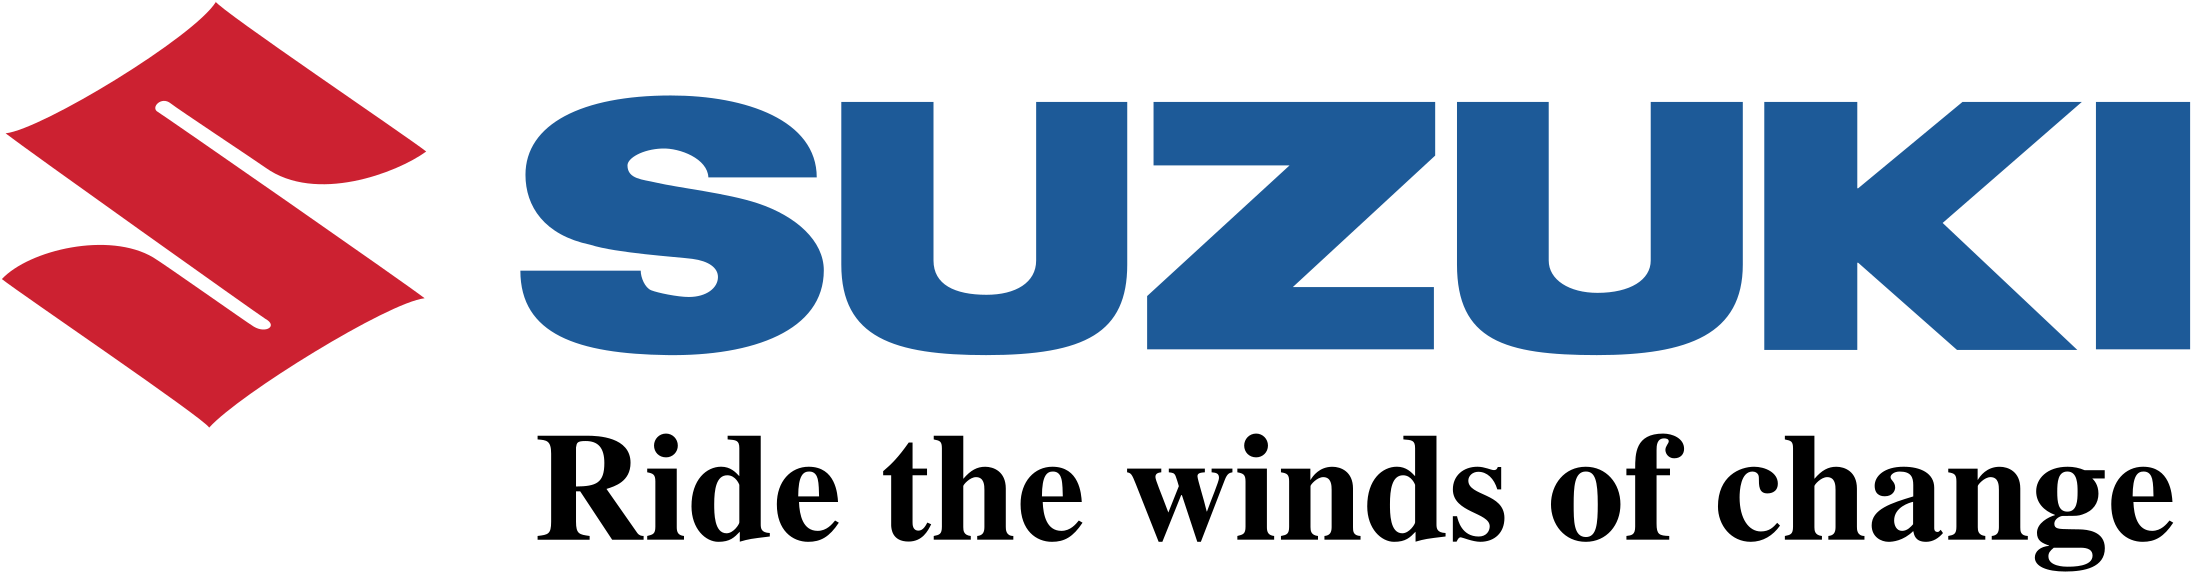 Imagen Transparente del logotipo de Suzuki